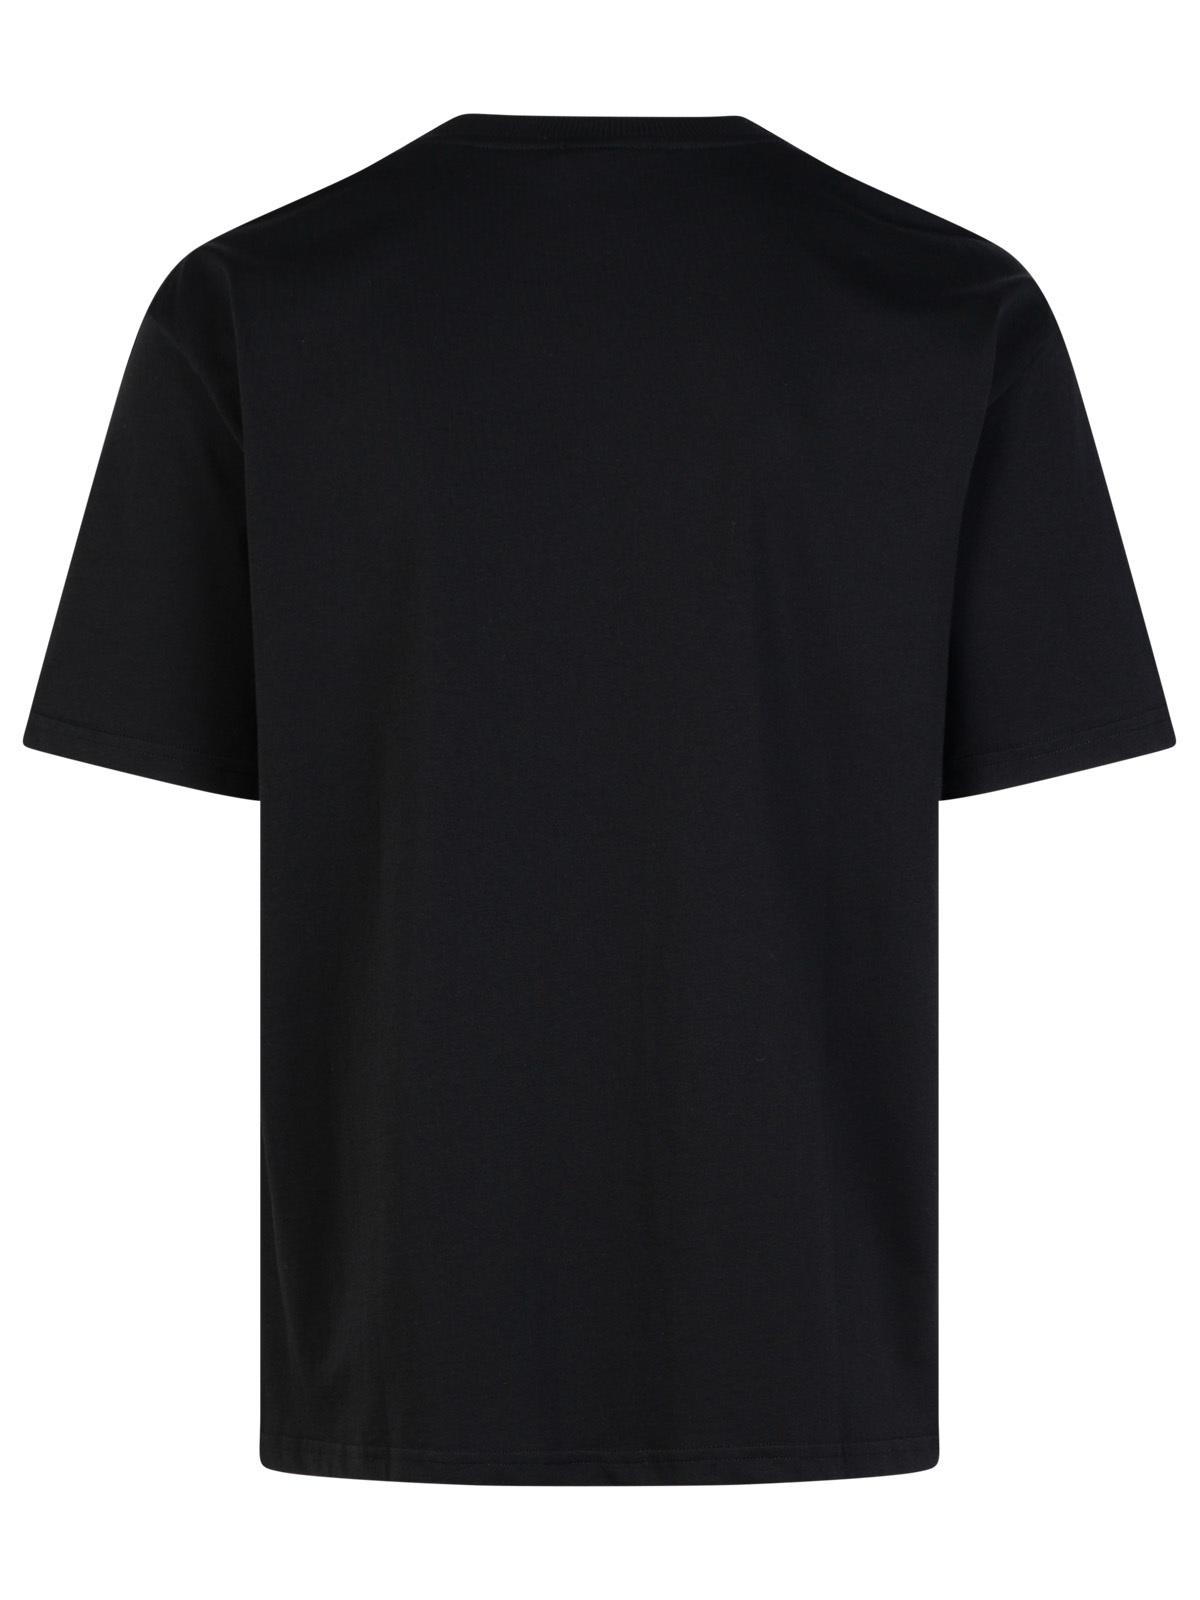 Shop Apc Boxy Black Cotton T-shirt